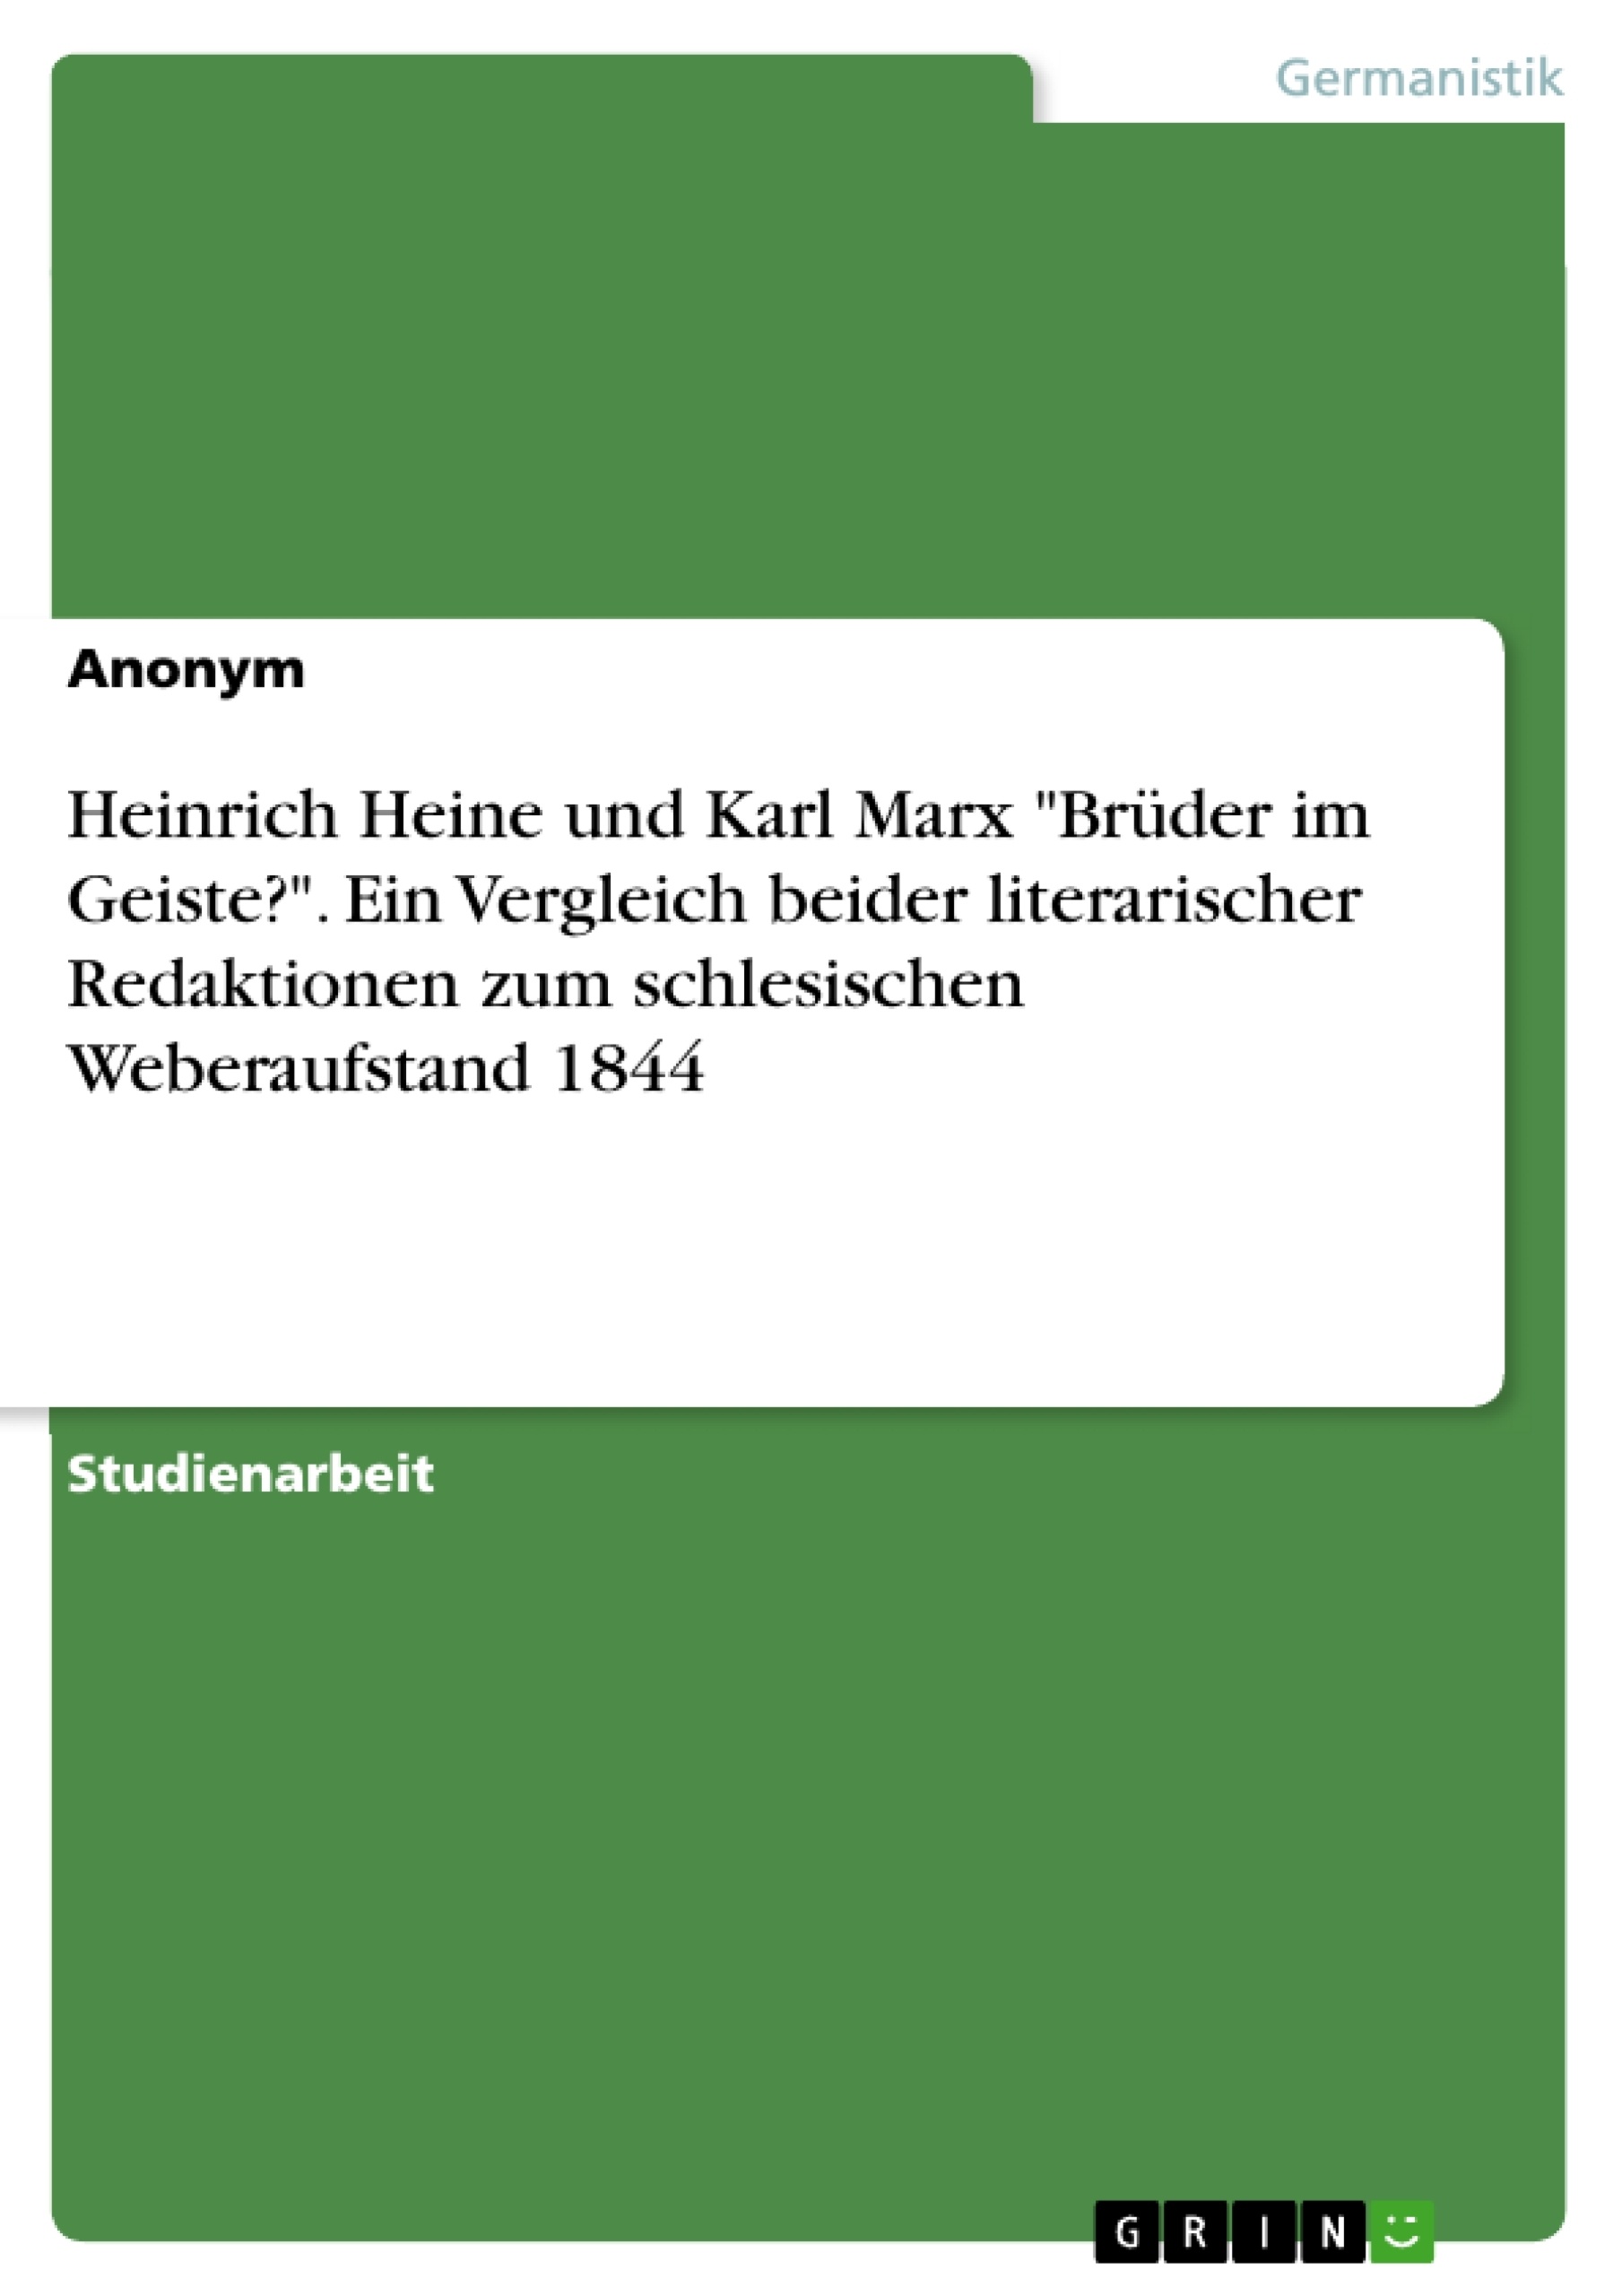 Titel: Heinrich Heine und Karl Marx "Brüder im Geiste?". Ein Vergleich beider literarischer Redaktionen zum schlesischen Weberaufstand 1844